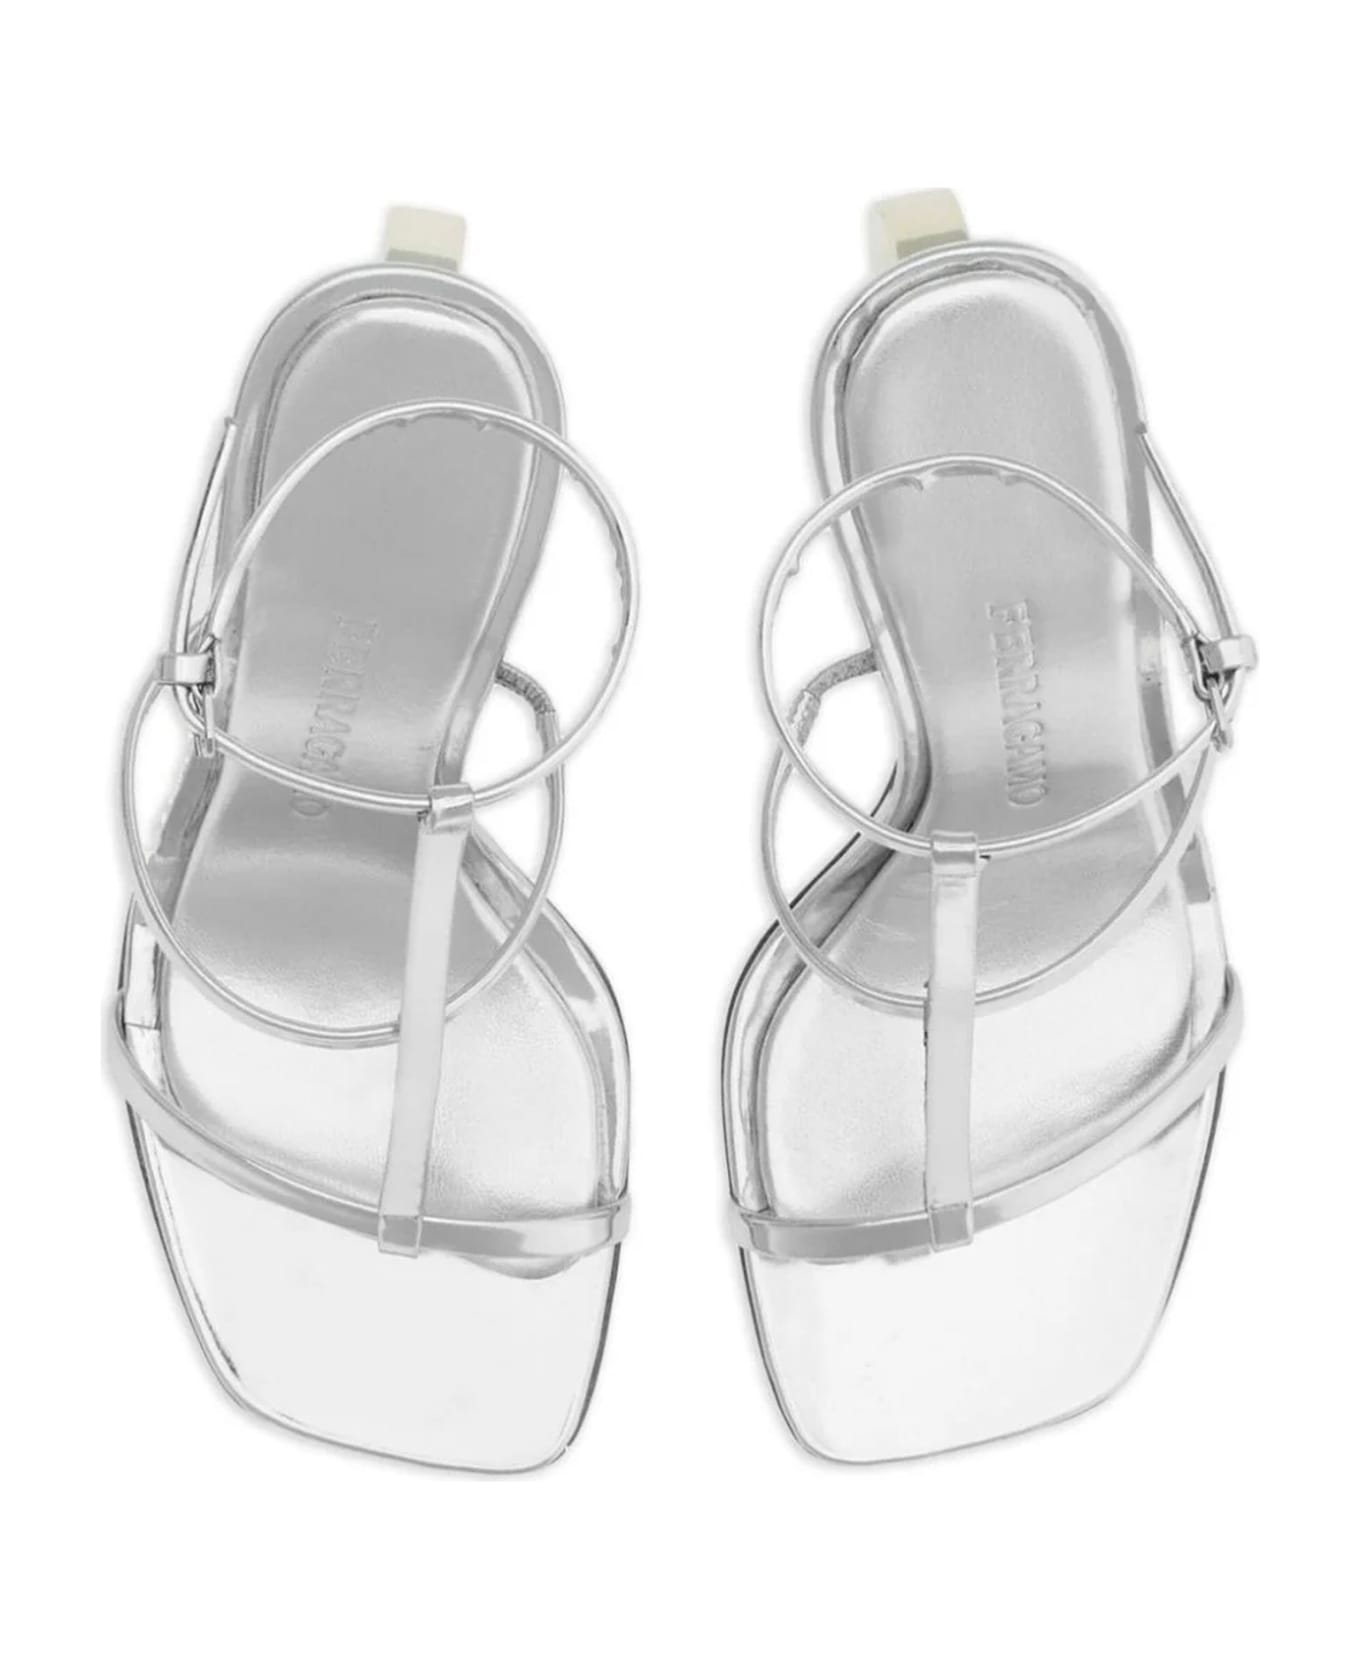 Ferragamo Silver-tone Nappa Leather Sandals - Silver サンダル